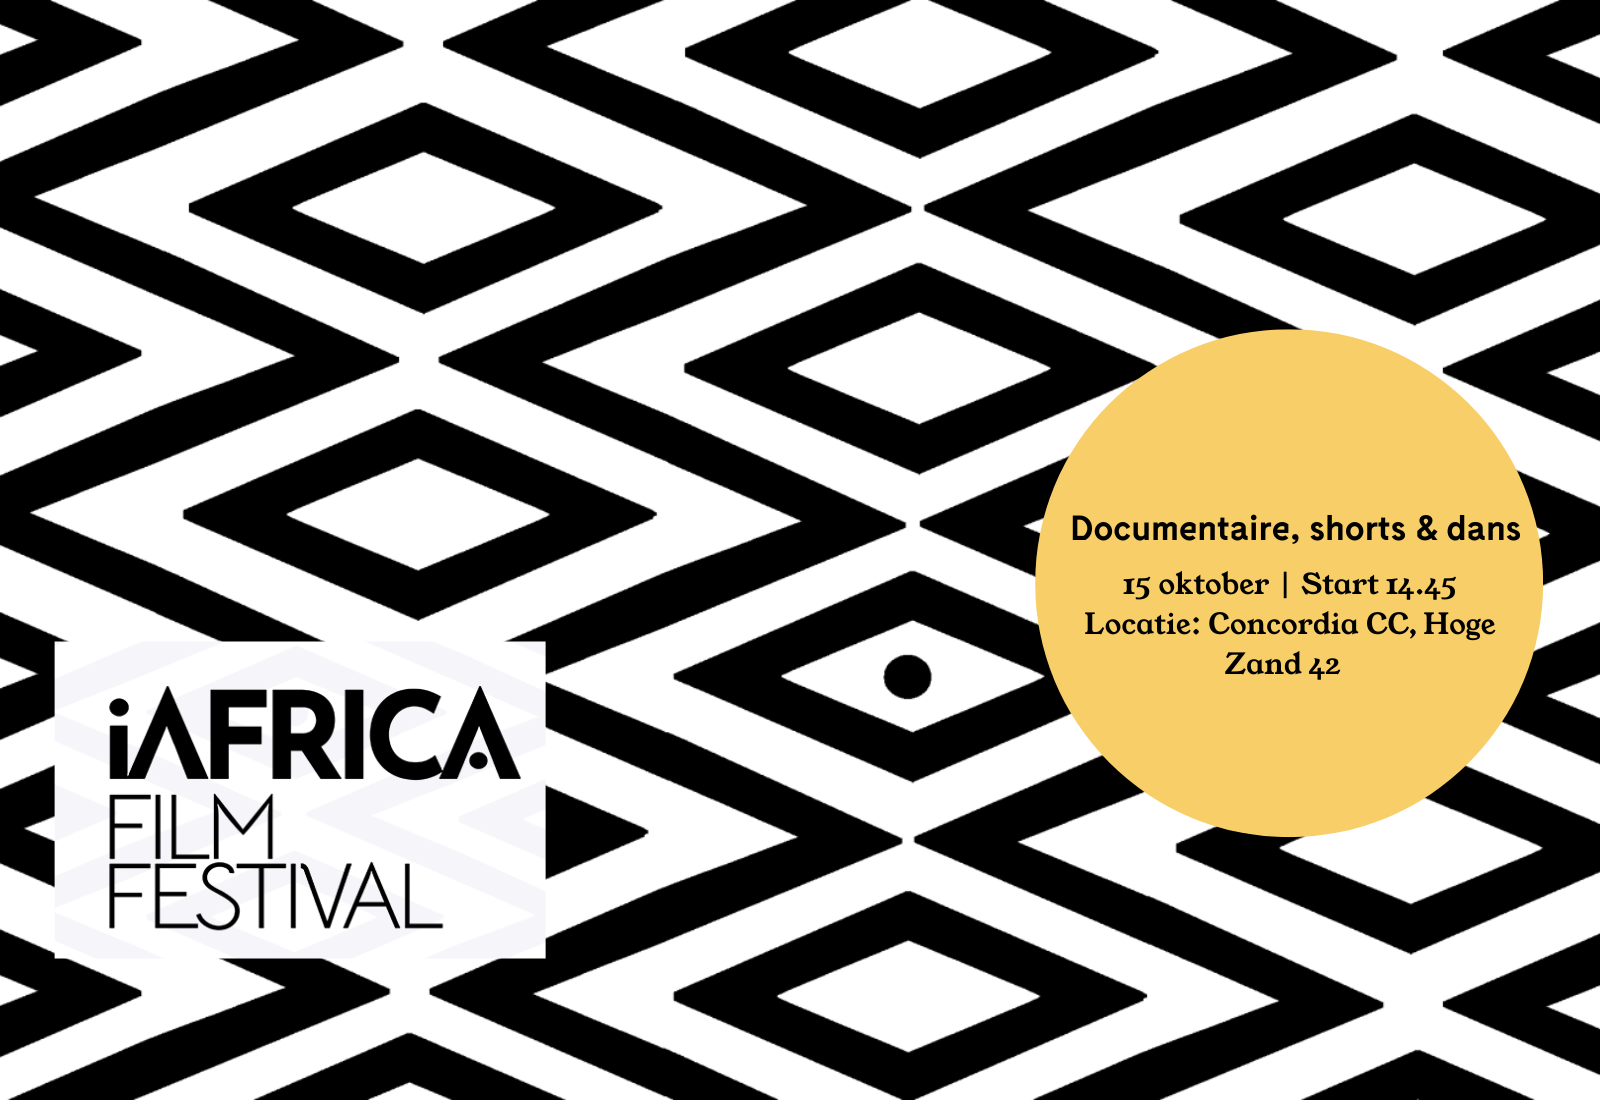 iAfrica Film Festival X Concordia CC